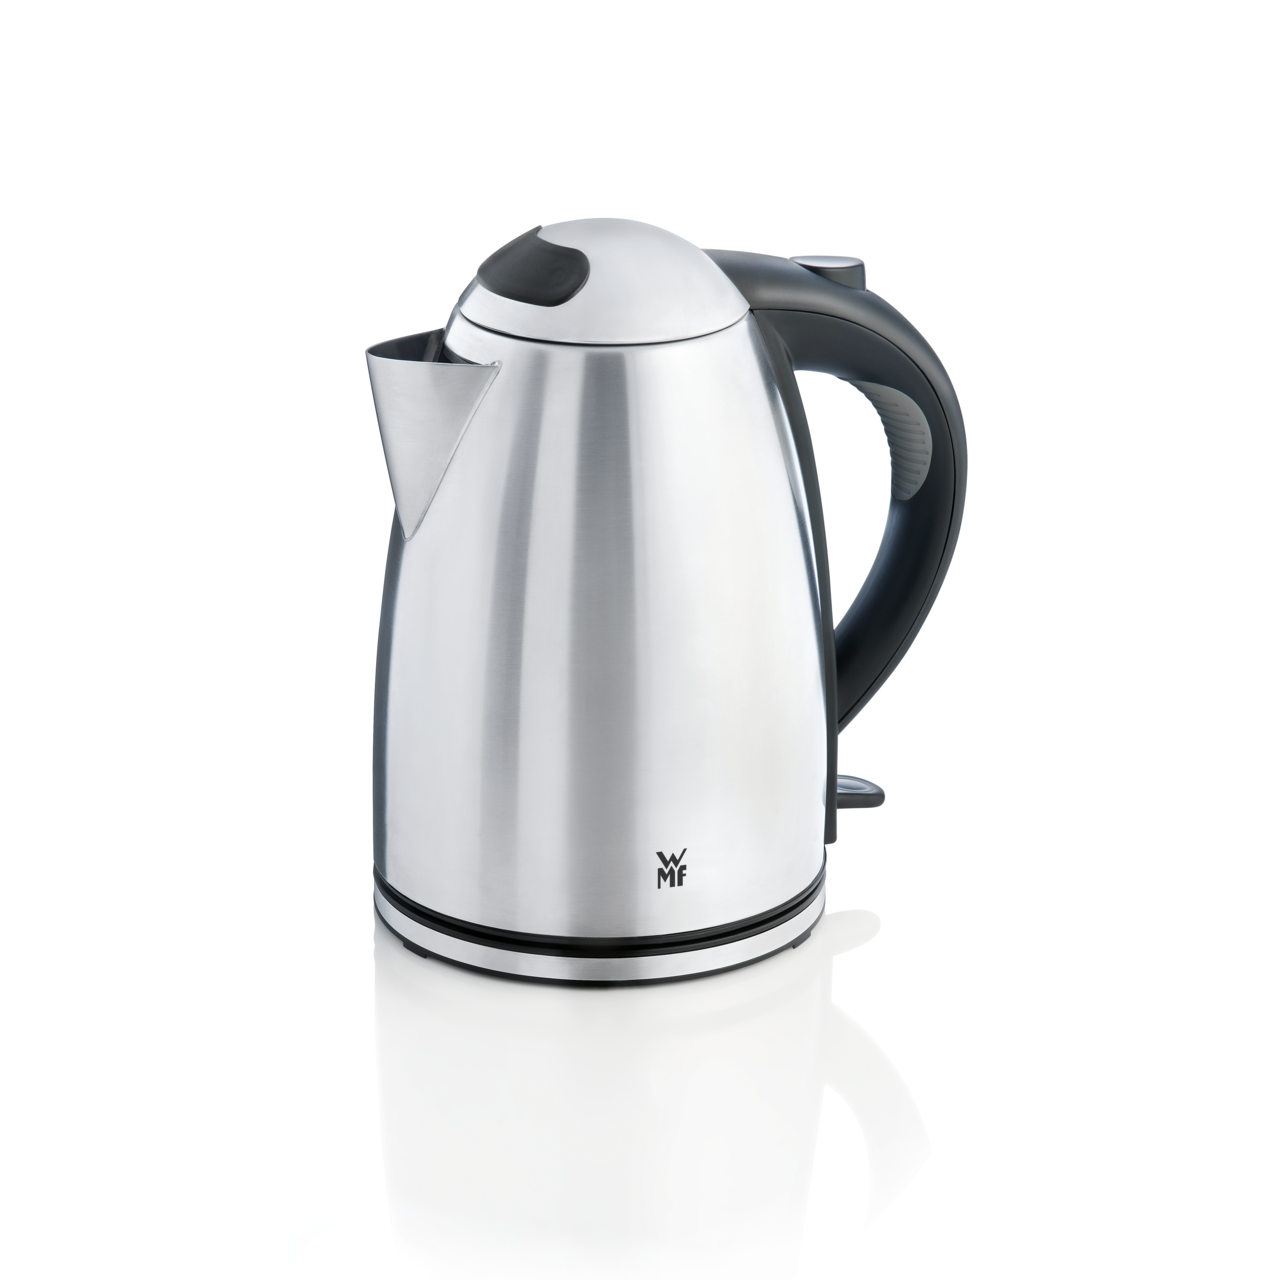 WMF STELIO kettle 1.7l